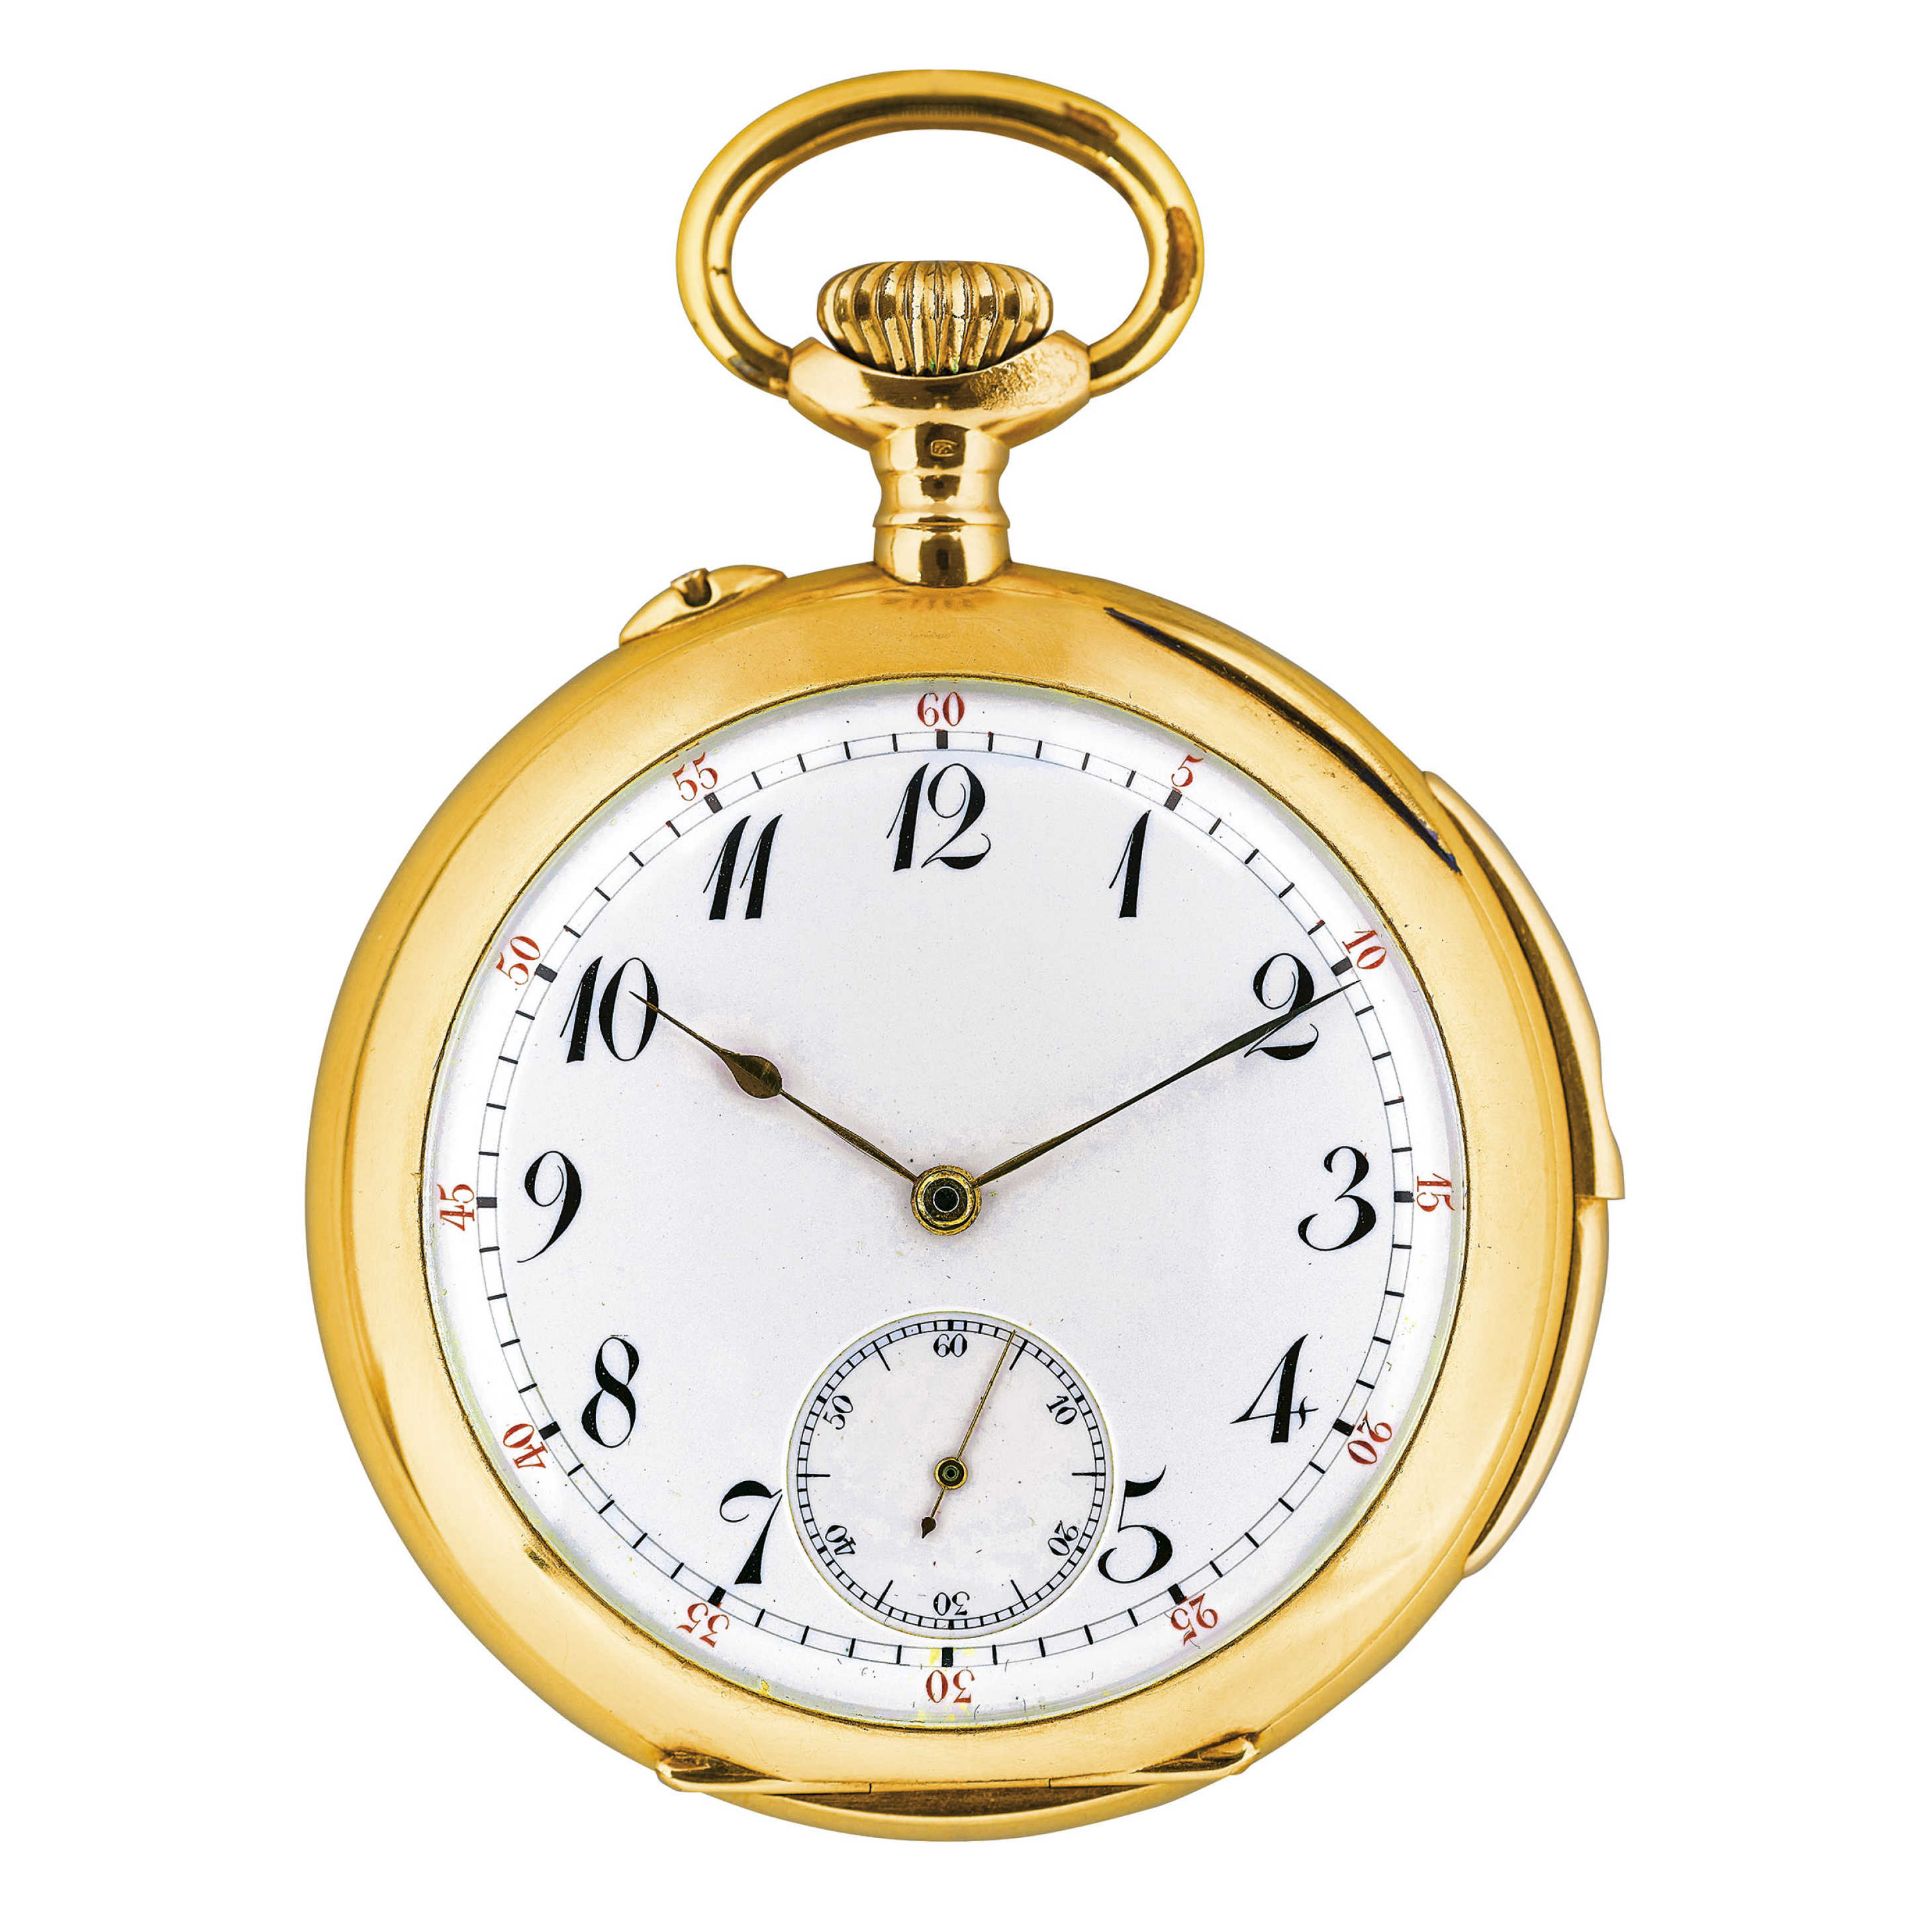 H. SANDOZ-ROBERTHistorical pocket watch.Manufacturer/Manufaktur: H. Sandoz-Robert, Les Ponts-de-